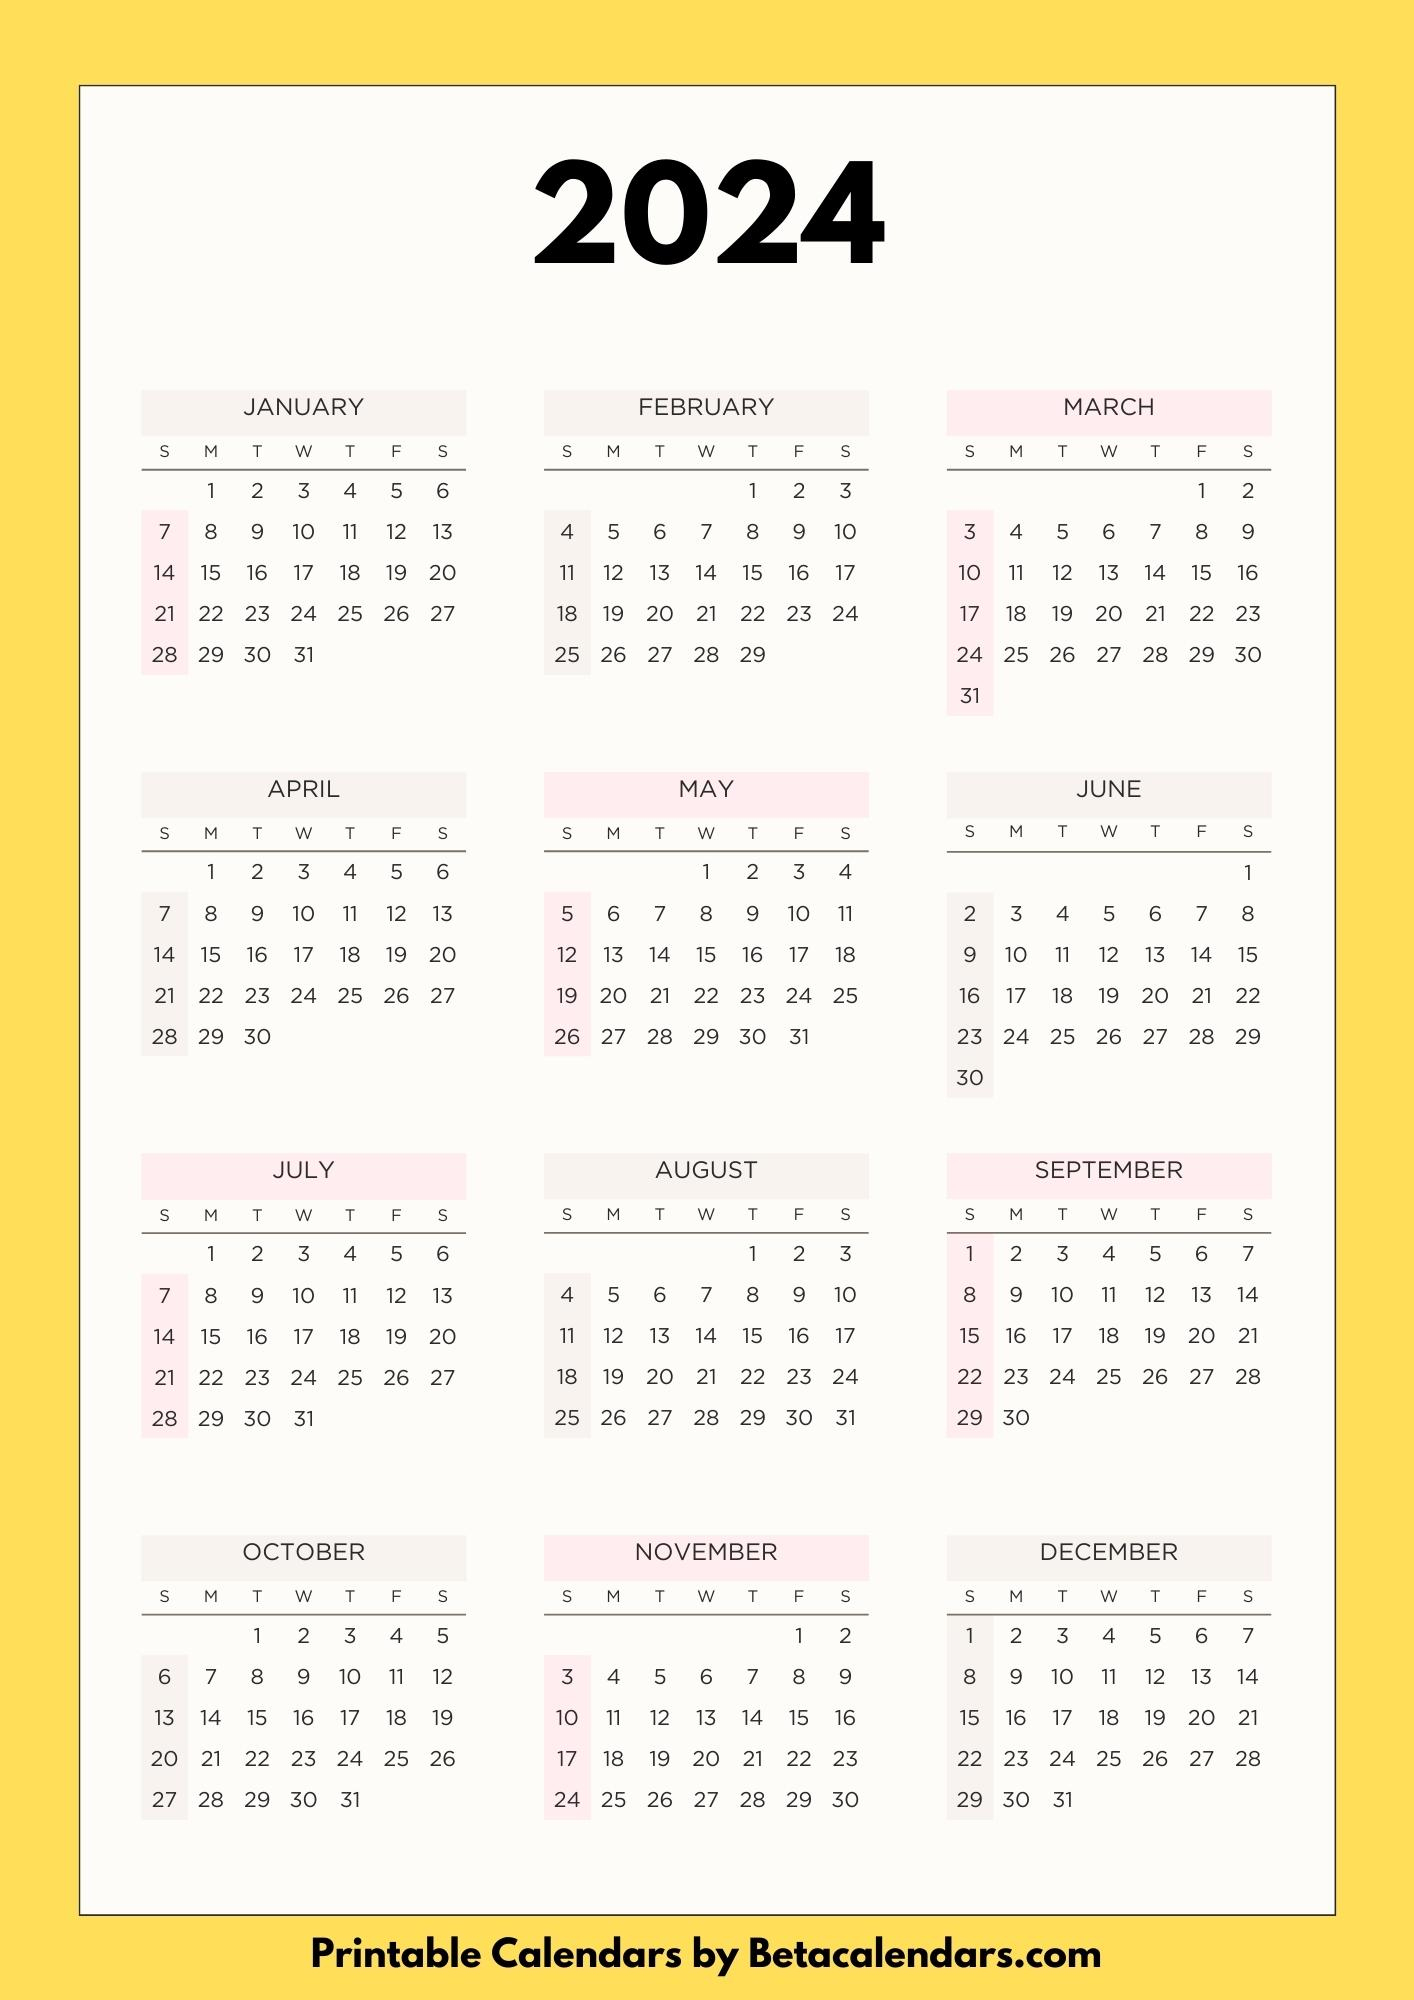 2024 Calendar - Beta Calendars | Printable Calendar 2024 Calendarlabs